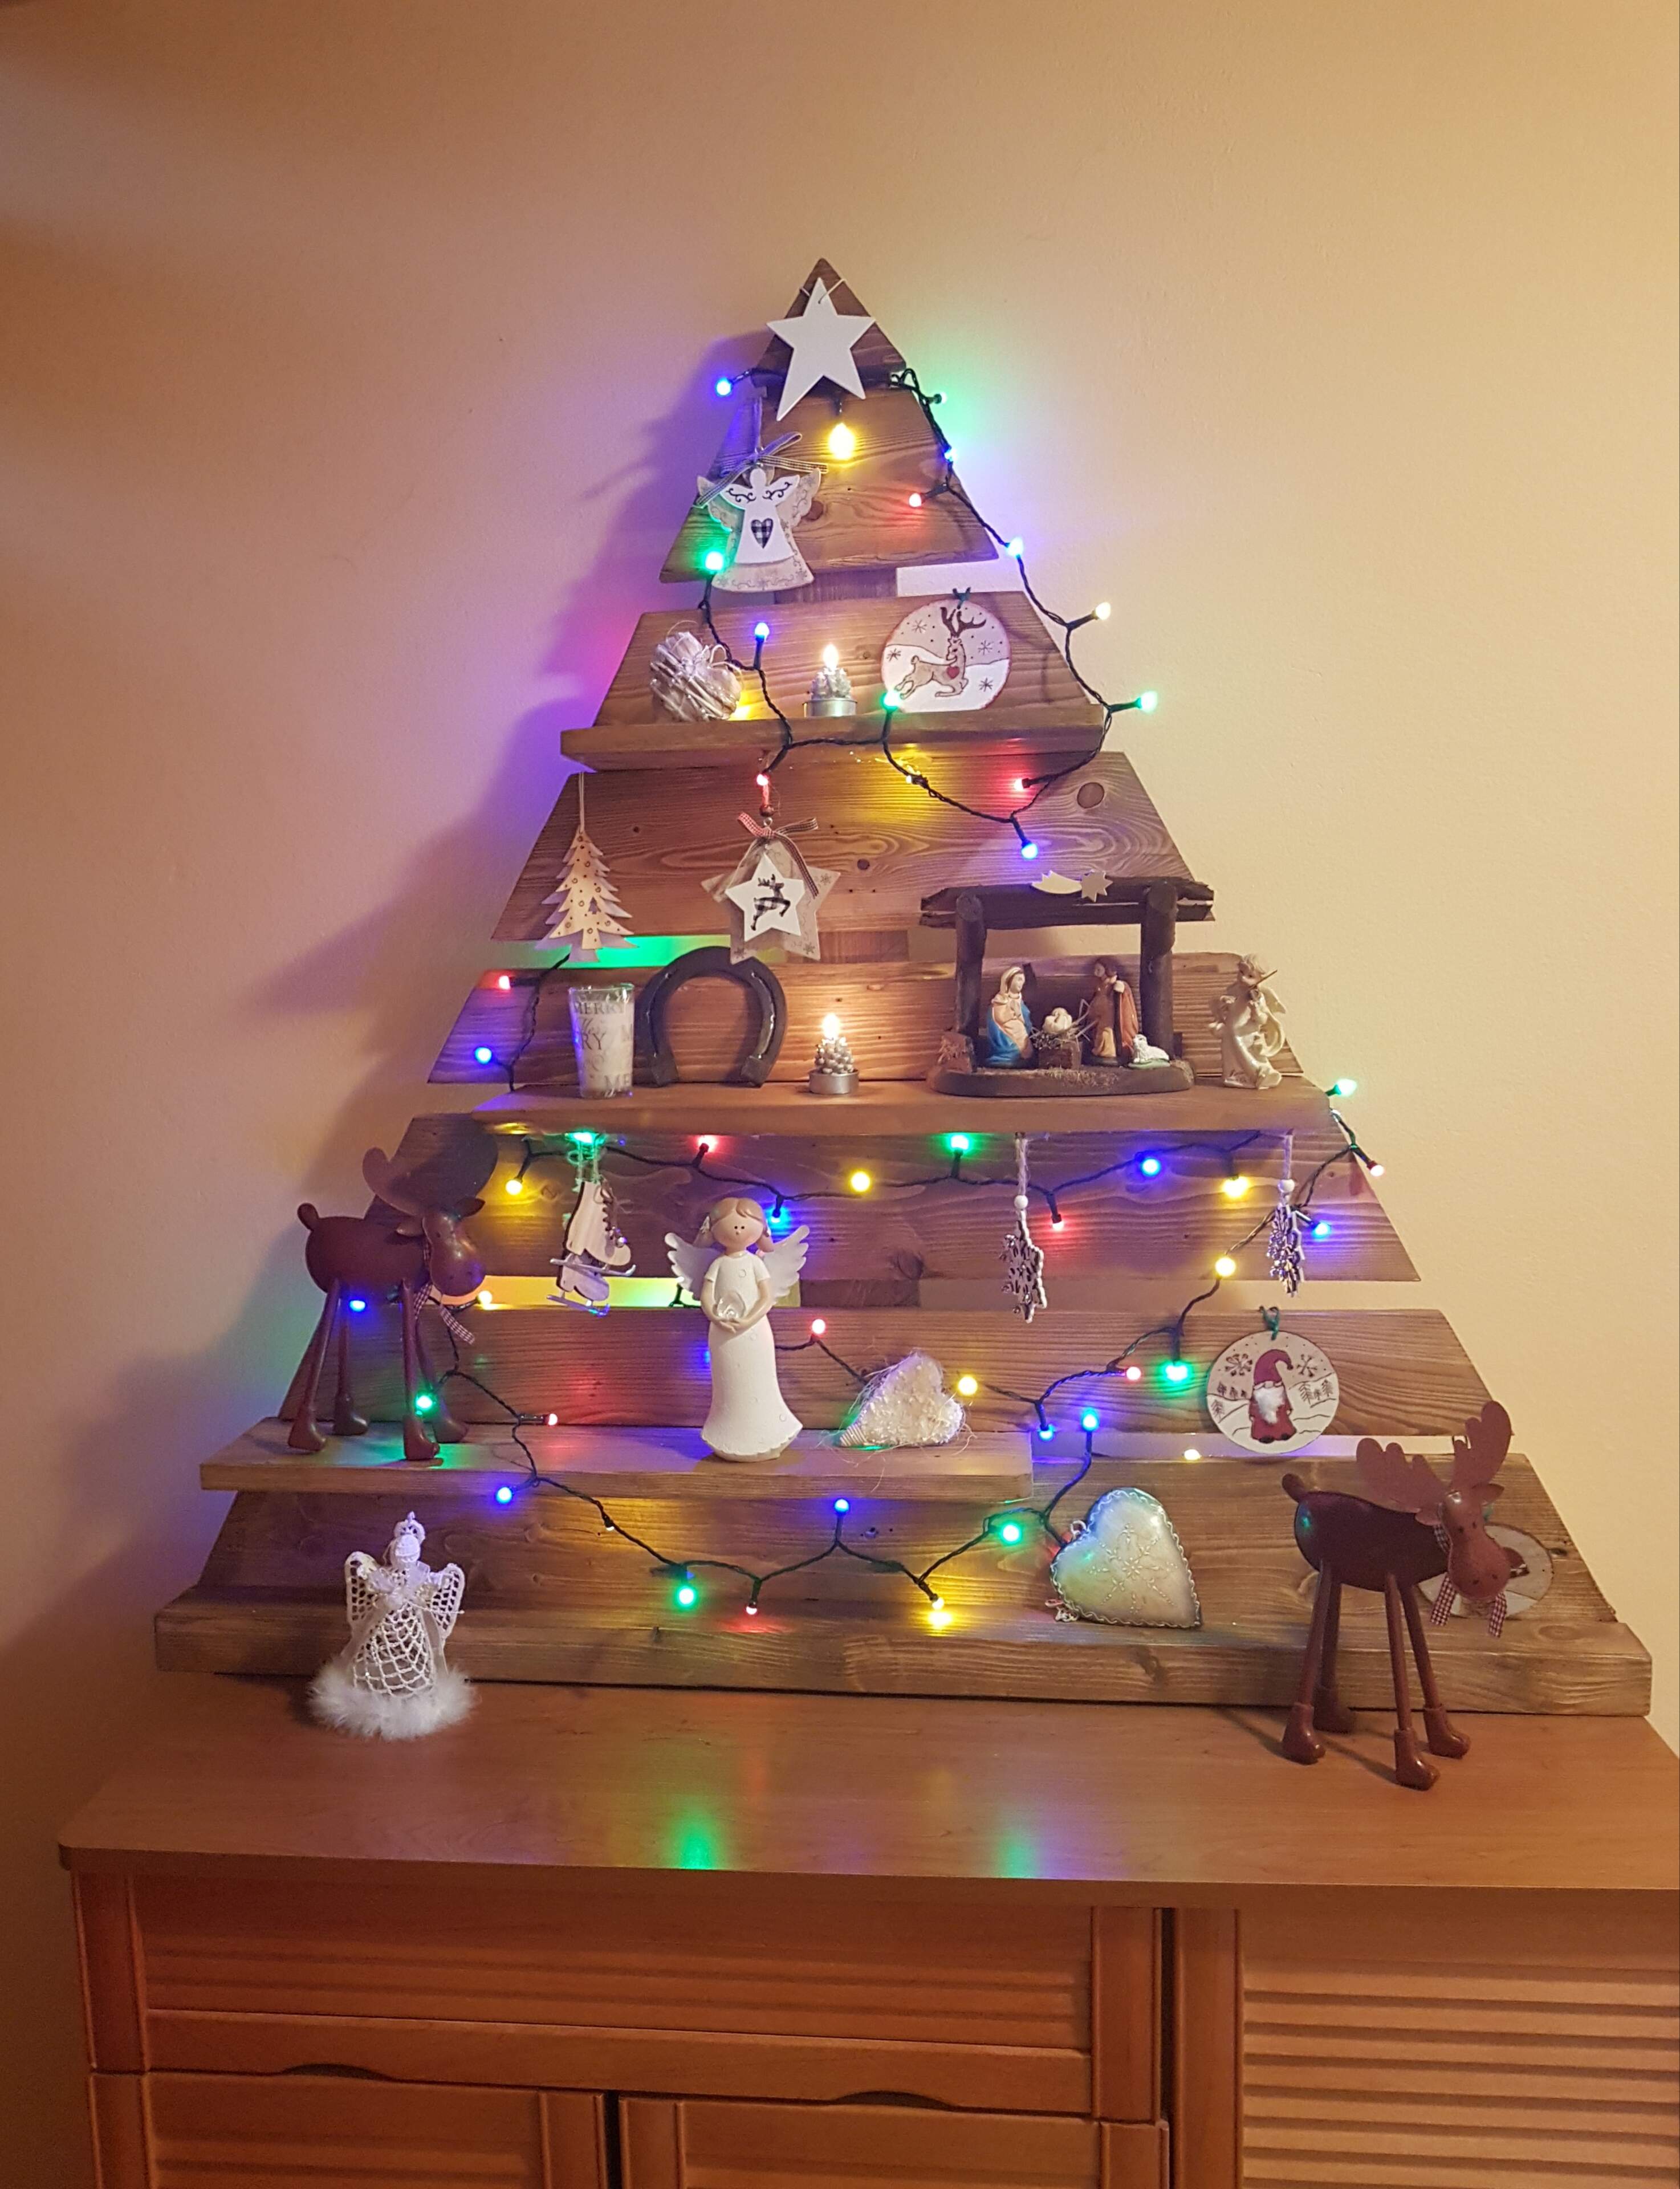 Drevený vianočný stromček